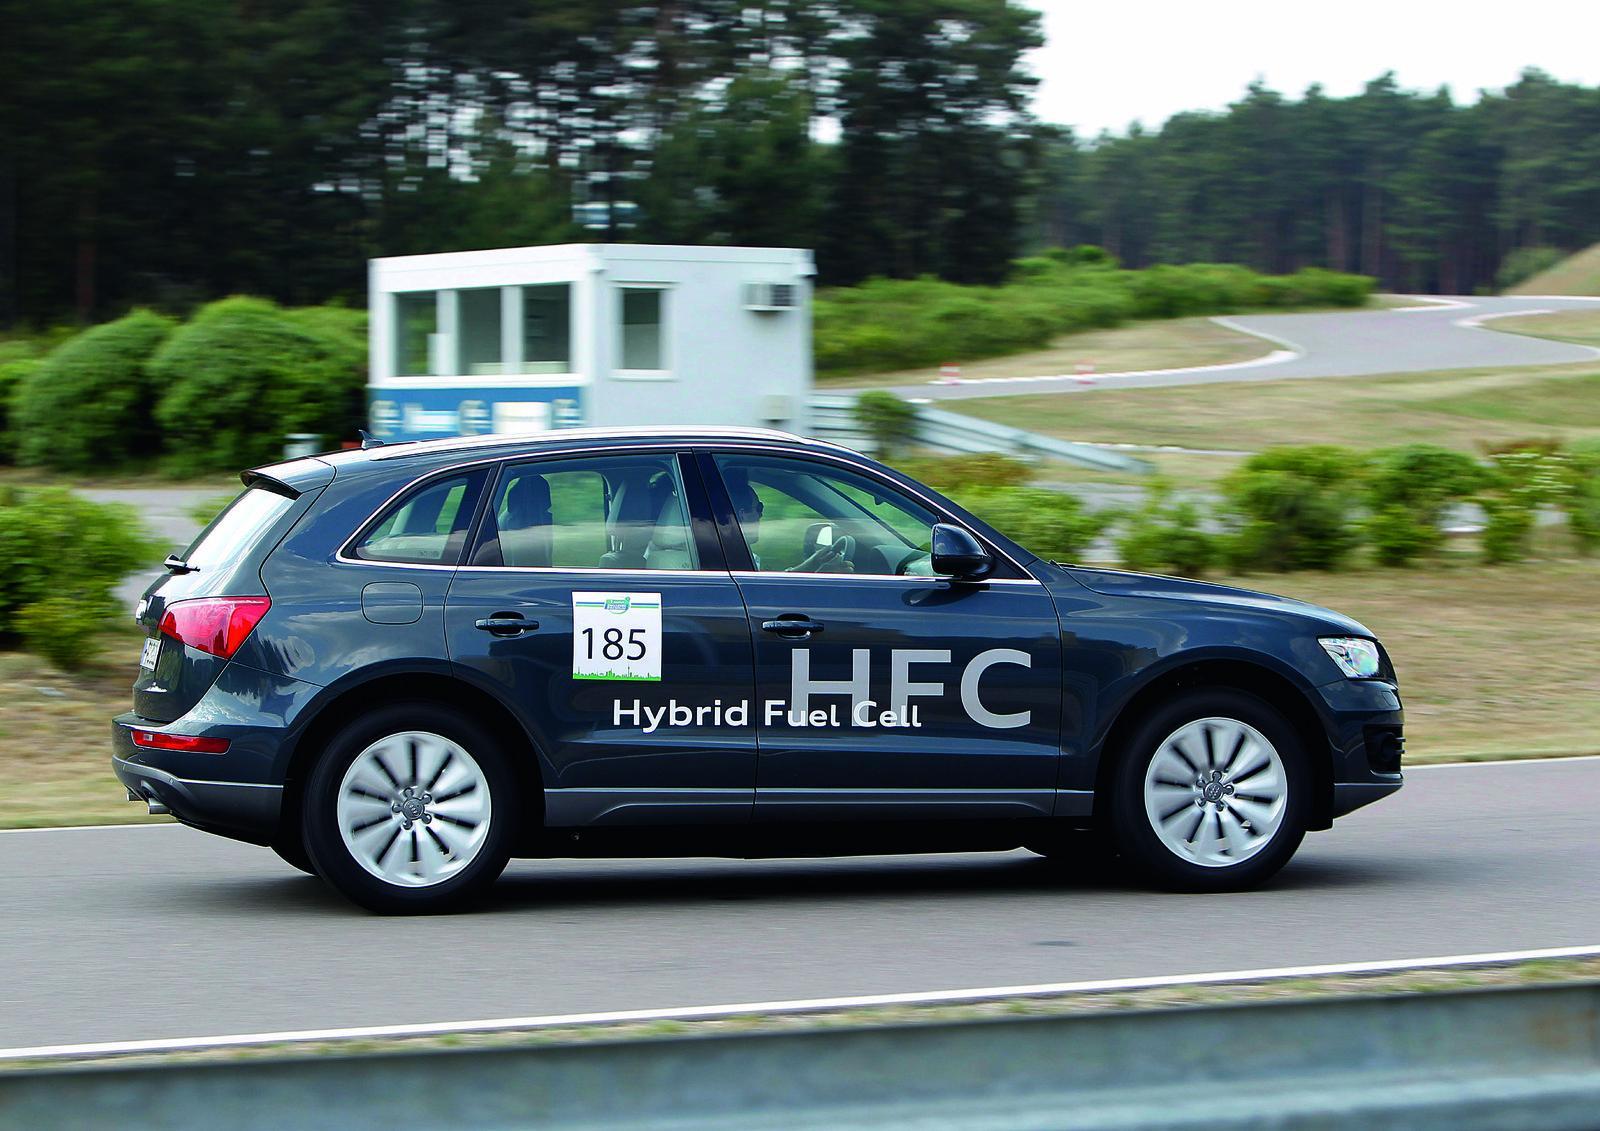 Sistemul Audi Hybrid Fuel Cell asigura o putere maxima de peste 250 CP